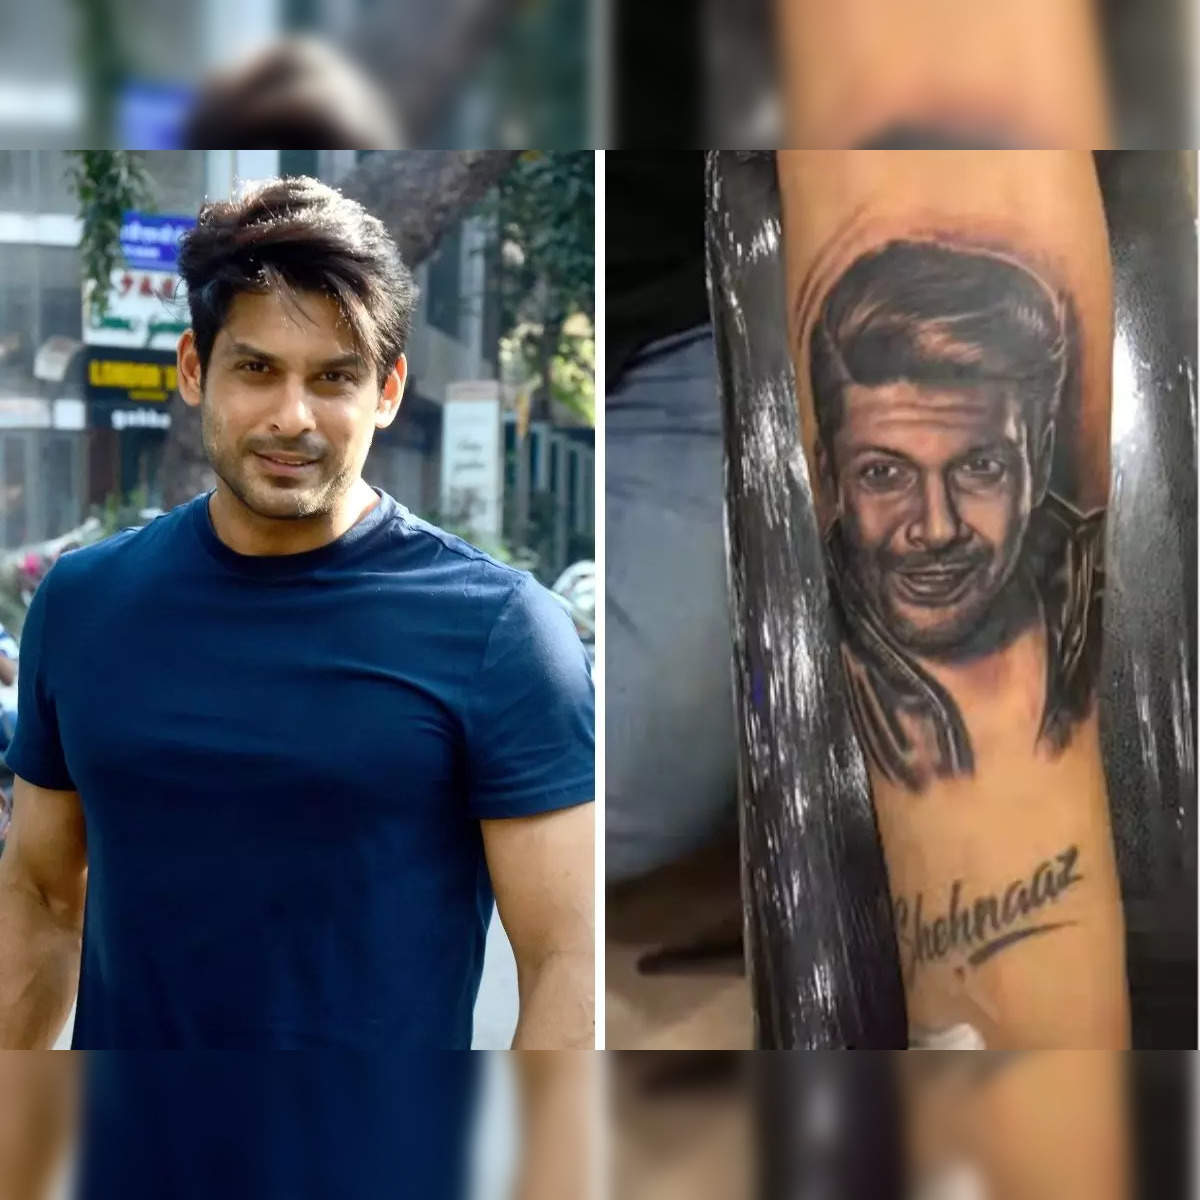 सिद्धार्थ शुक्ला की याद में फैन ने हाथ पर गुदवाया एक्टर का नाम - Siddharth  Shukla fan tattoo his name on arm